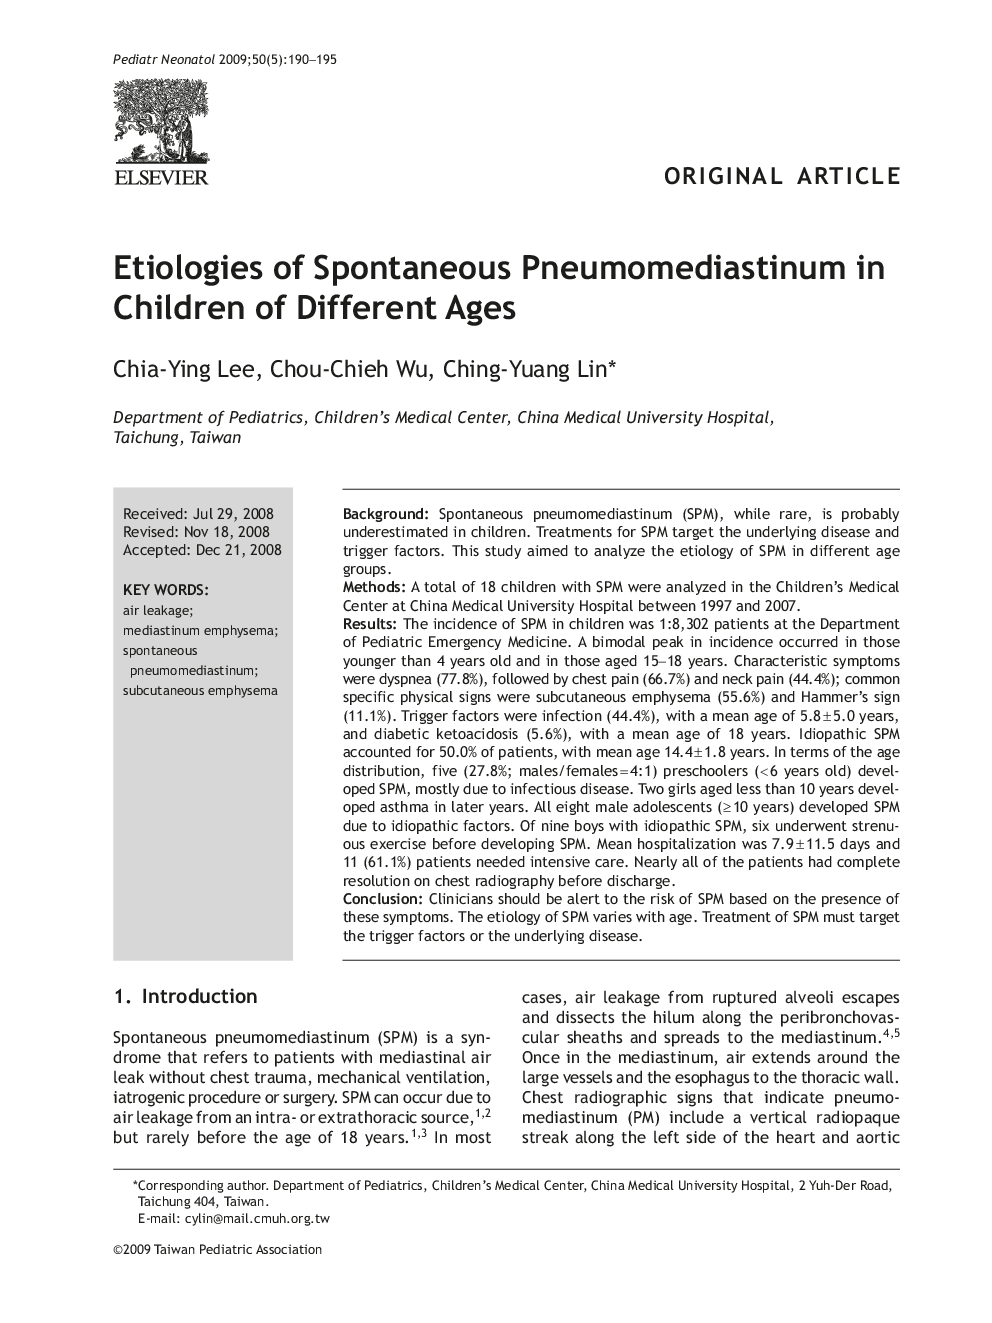 Etiologies of Spontaneous Pneumomediastinum in Children of Different Ages